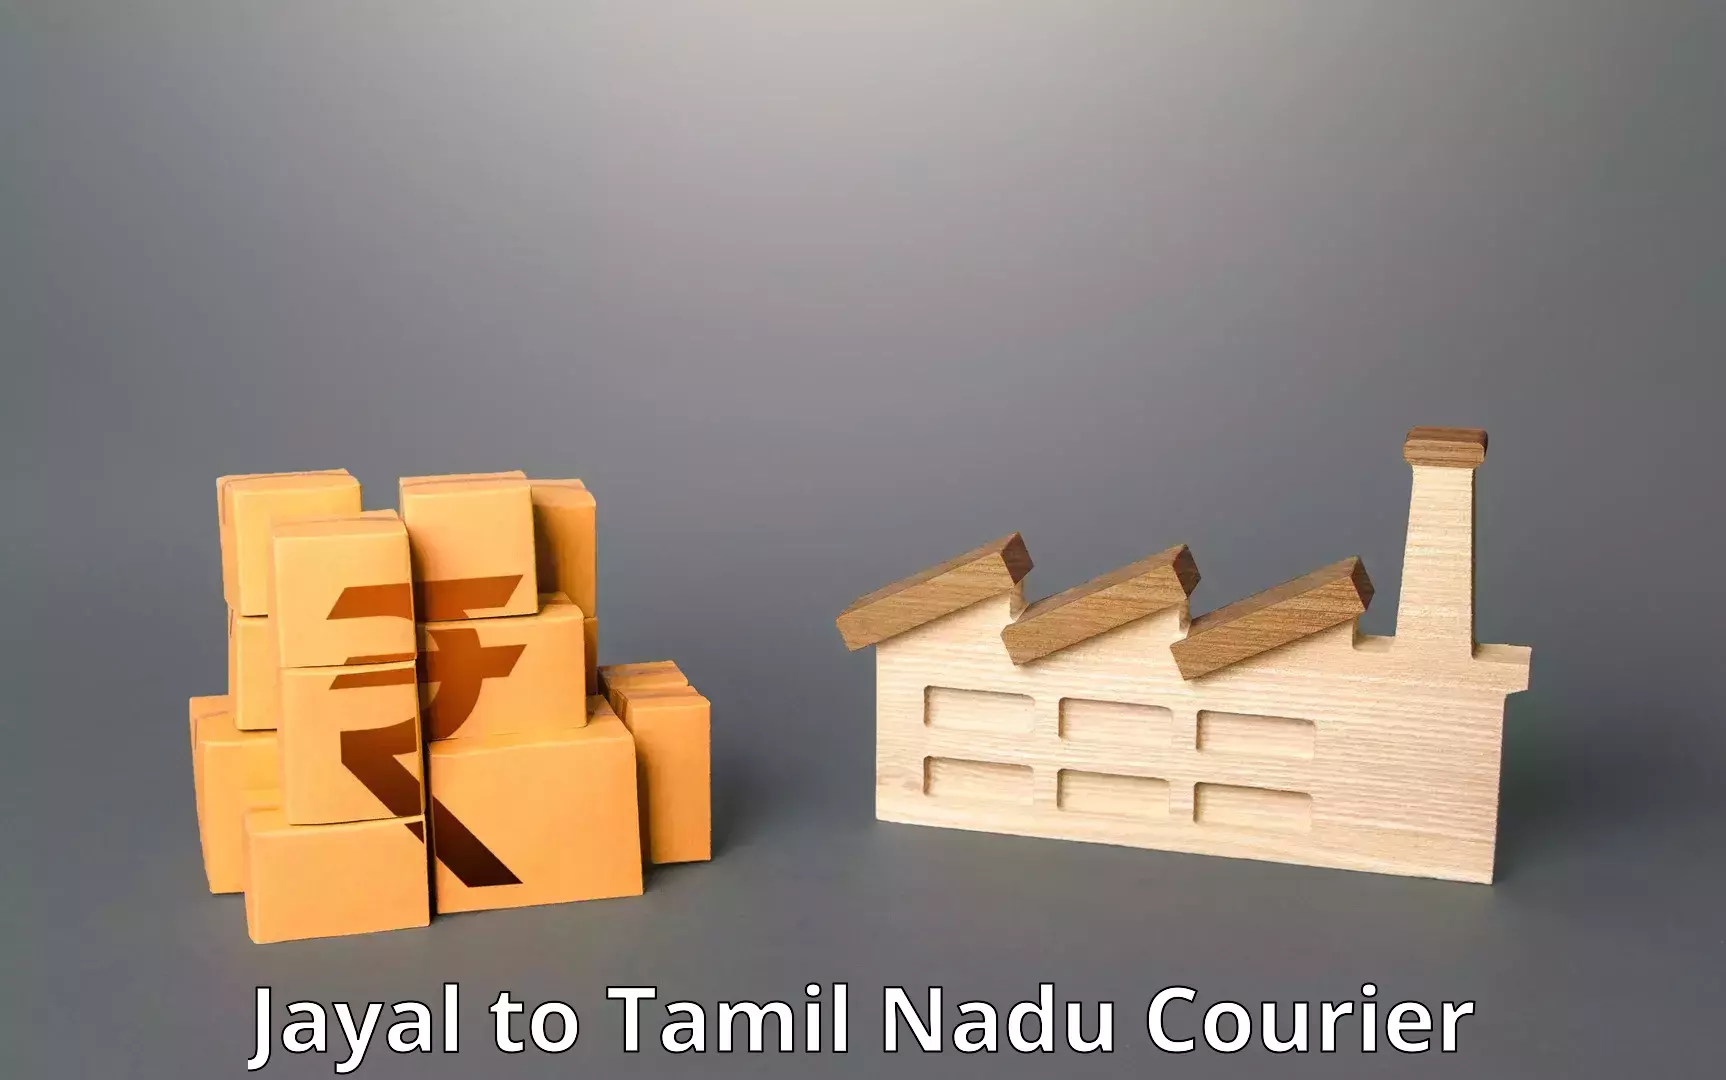 Express logistics providers Jayal to Tamil Nadu